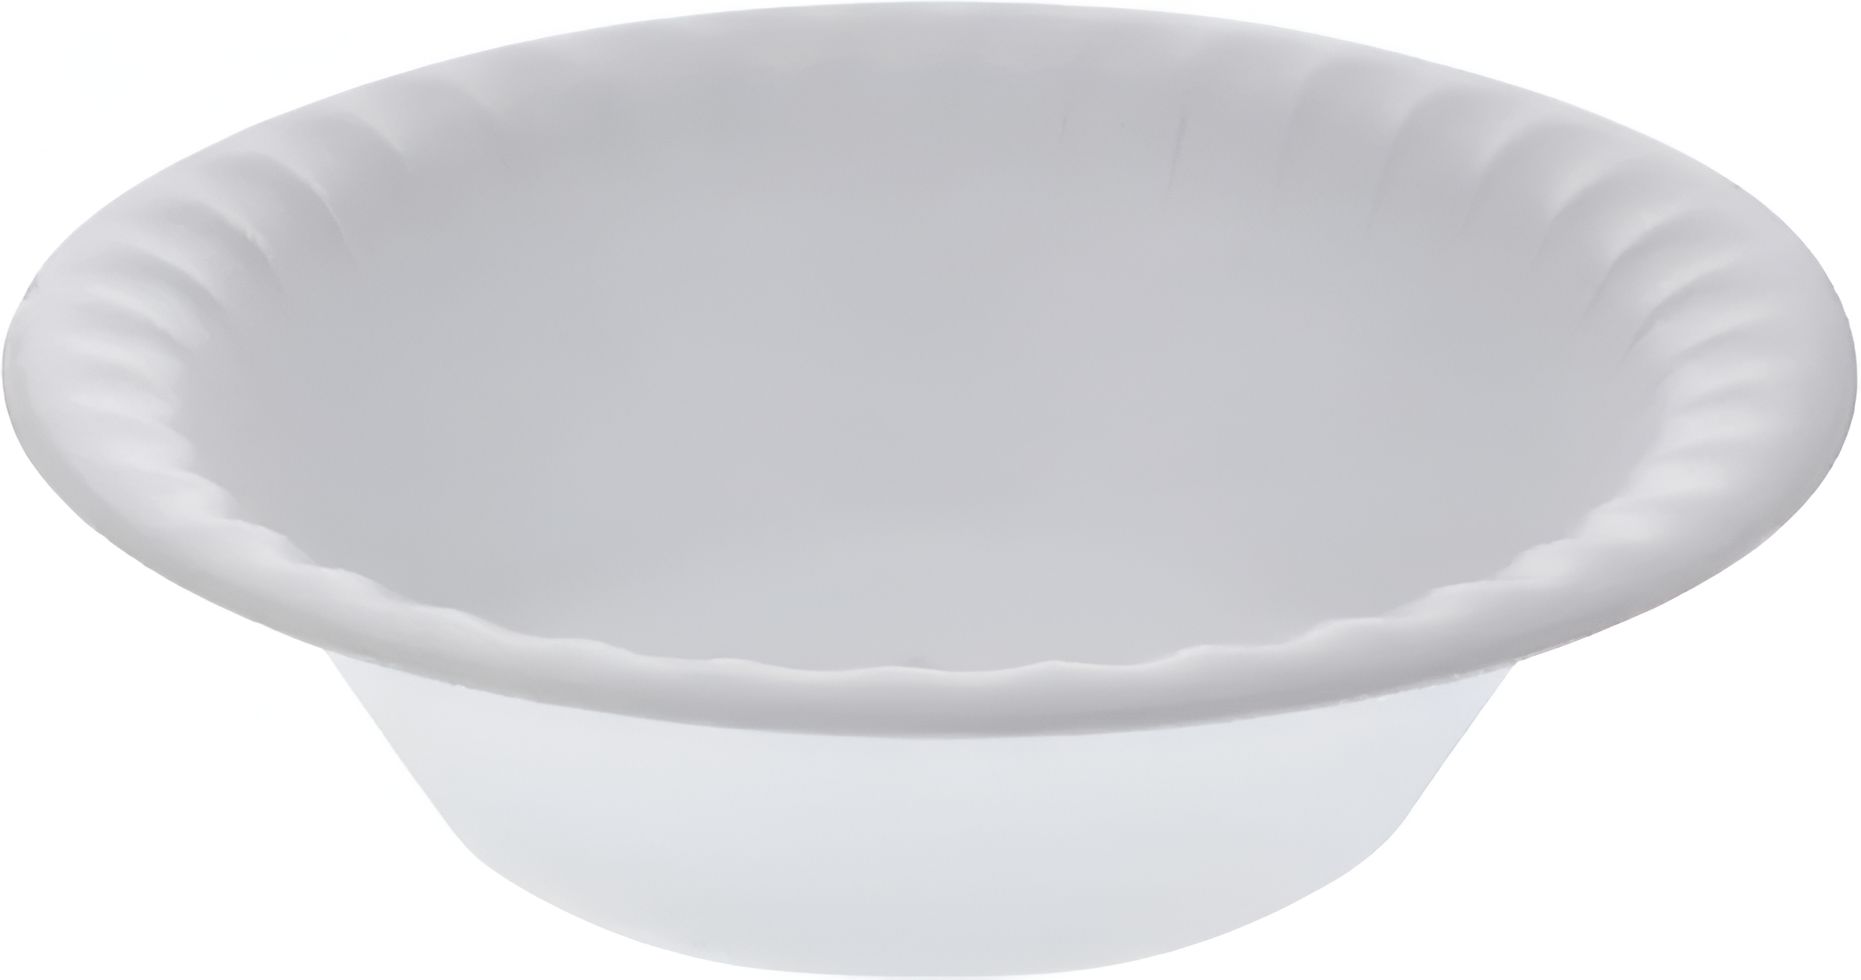 Pactiv Evergreen - 12 Oz White Non-Laminated Round Foam Bowl, 5/Cs - YTH100120000